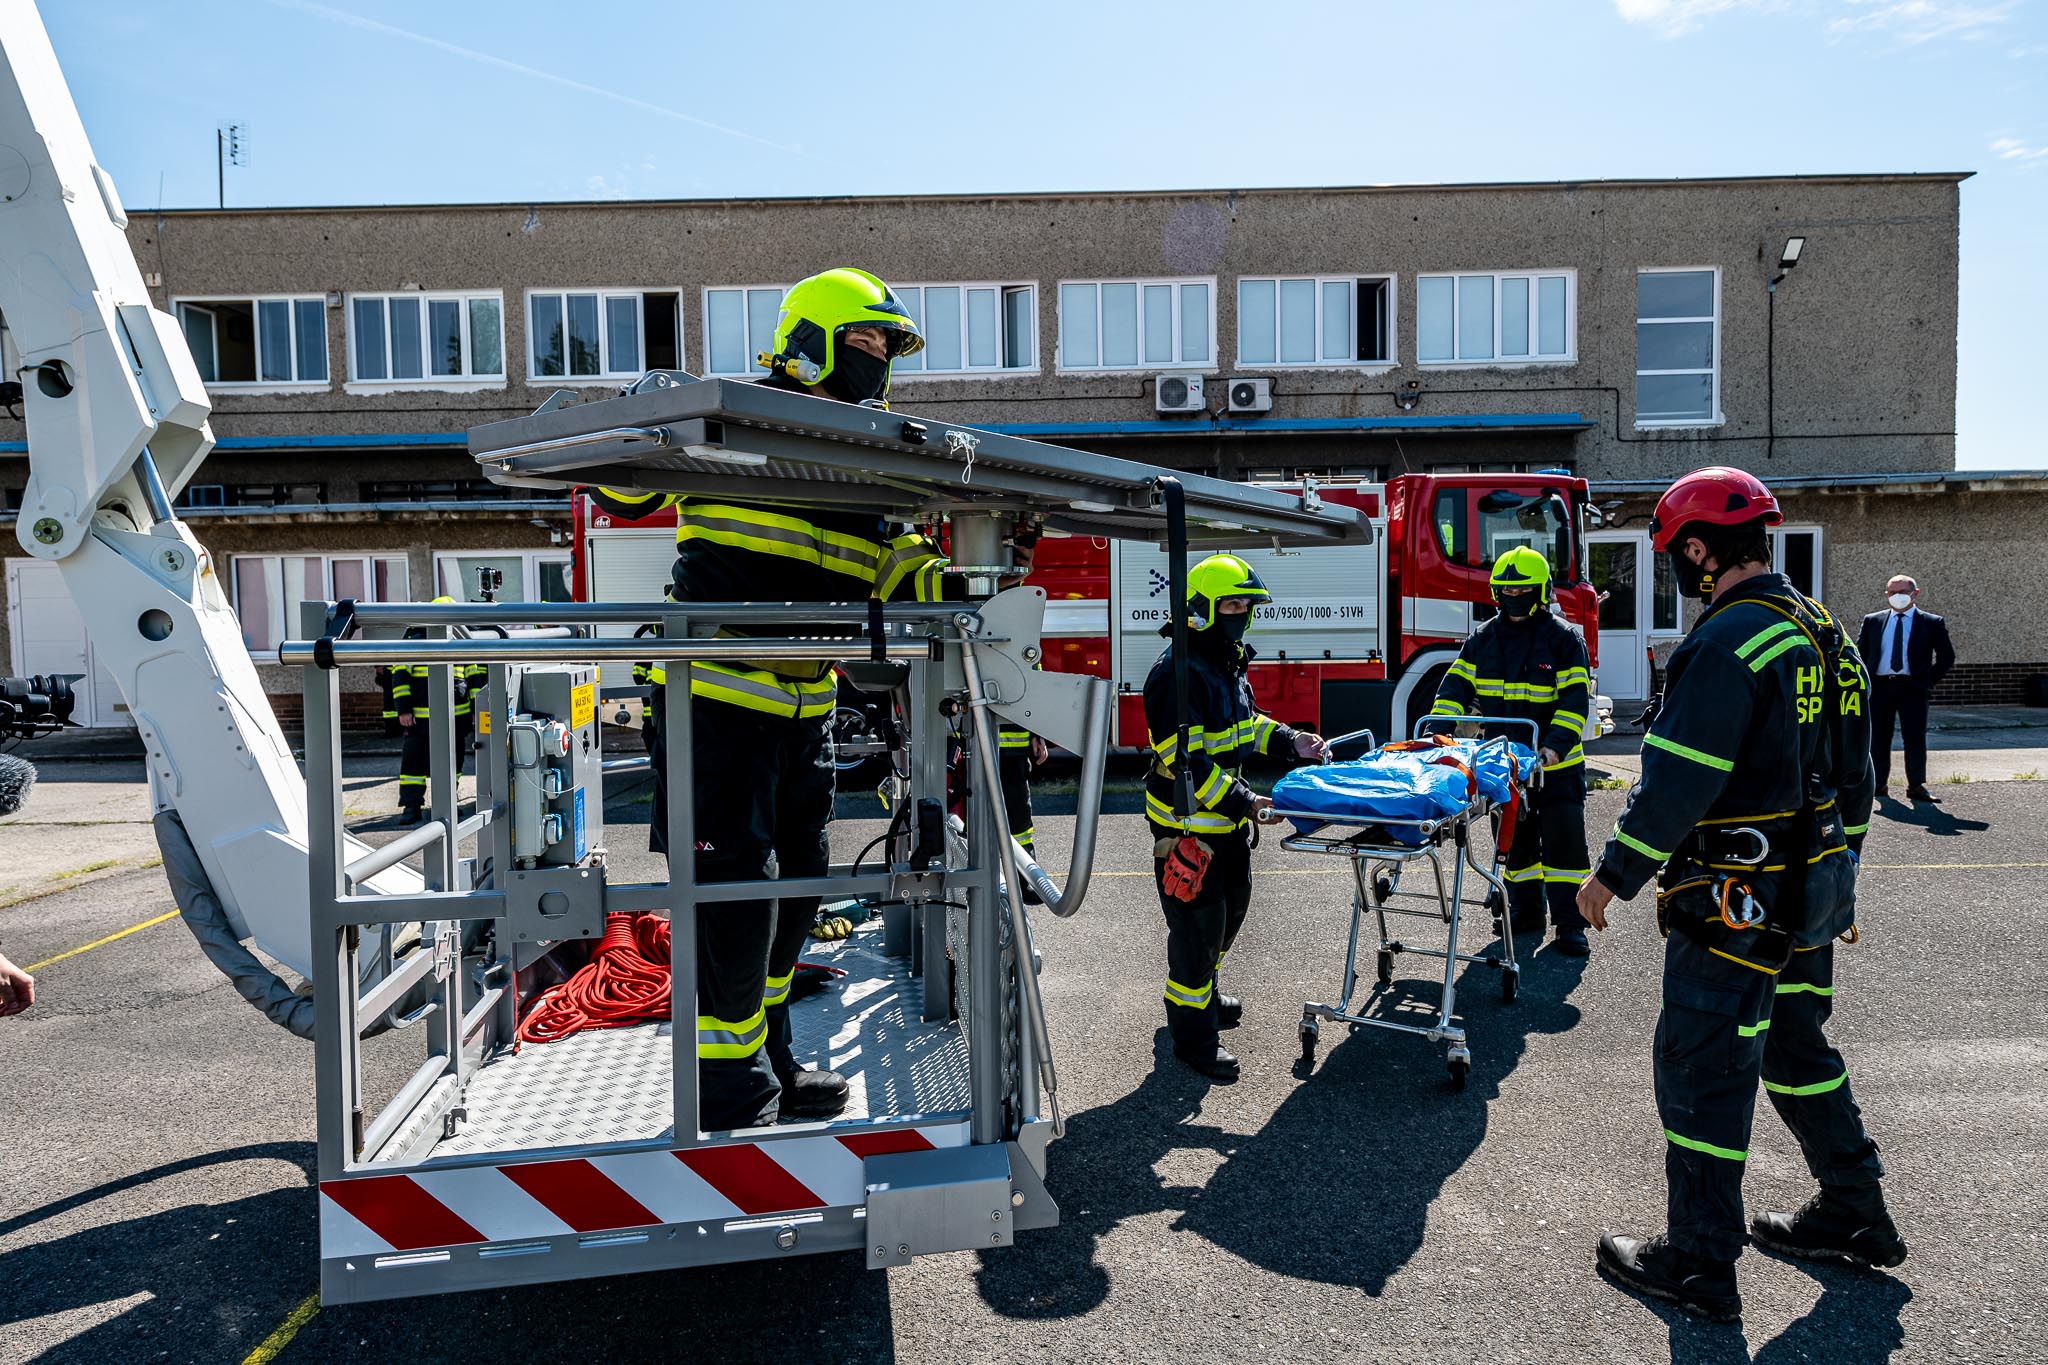 02 Novou zásahovou plošinu za 17 milionů korun budou hasiči ze Spolany využívat i při zásazích mimo areál.jpg